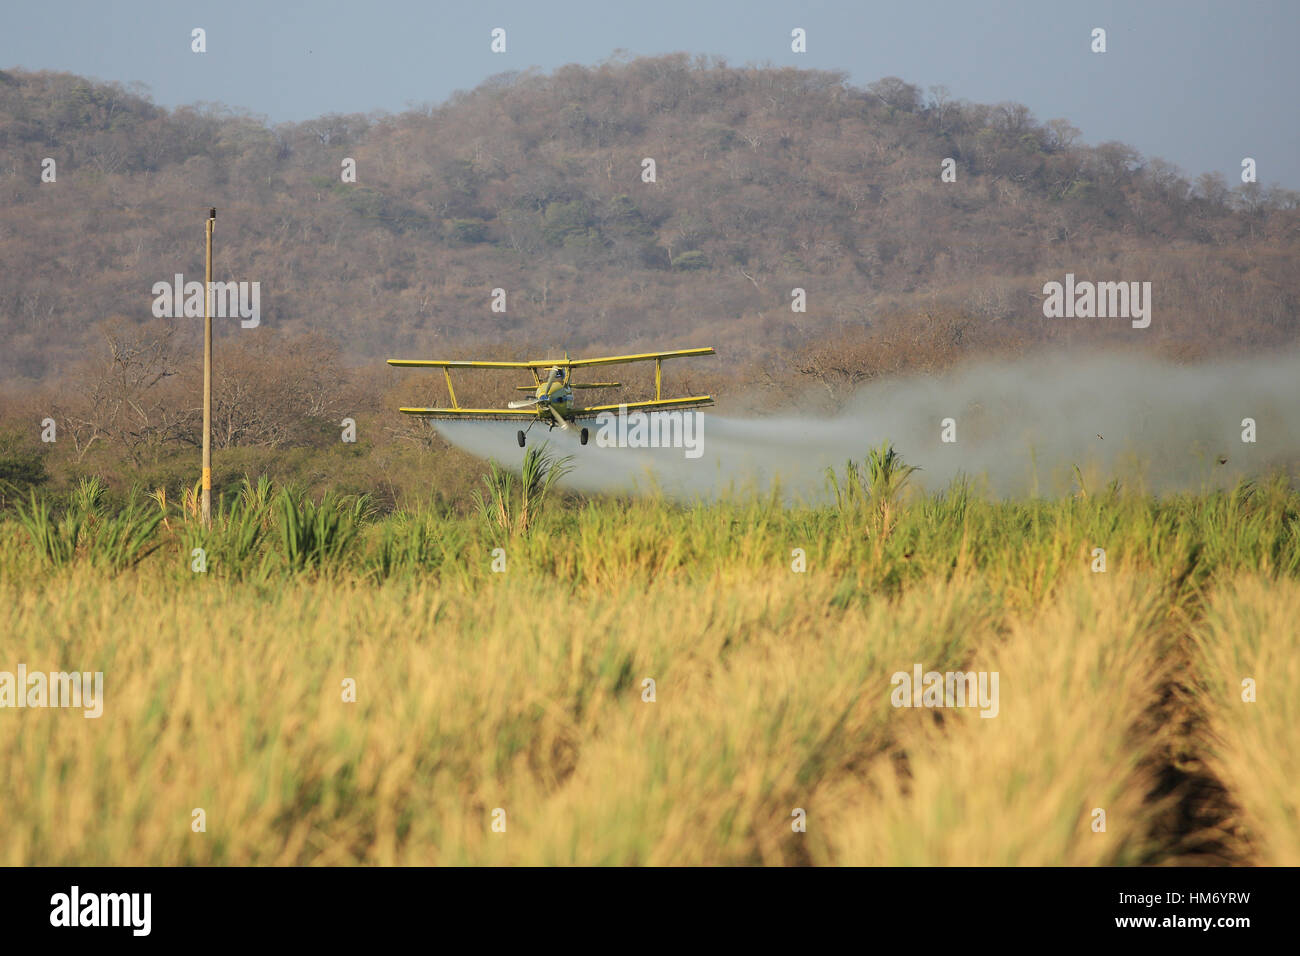 Flugzeug Sprühen von Pestiziden über eine Reis-Plantage in der Nähe von Nationalpark Palo Verde, Guanacaste, Costa Rica. Stockfoto